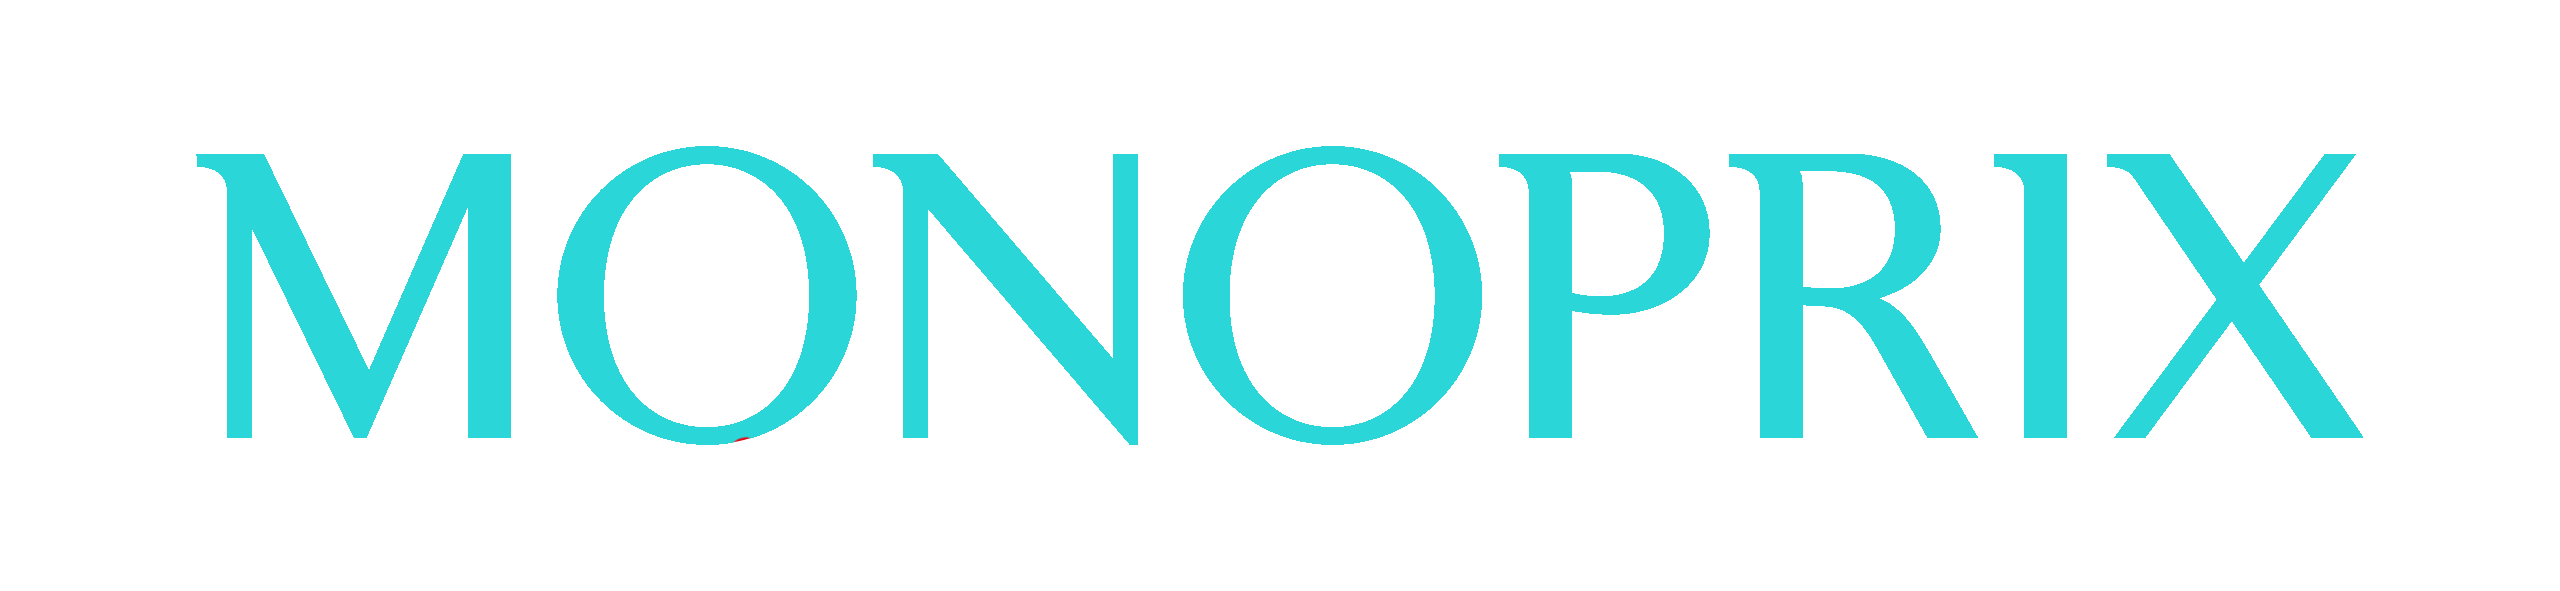 Monoprix_logo-bleu